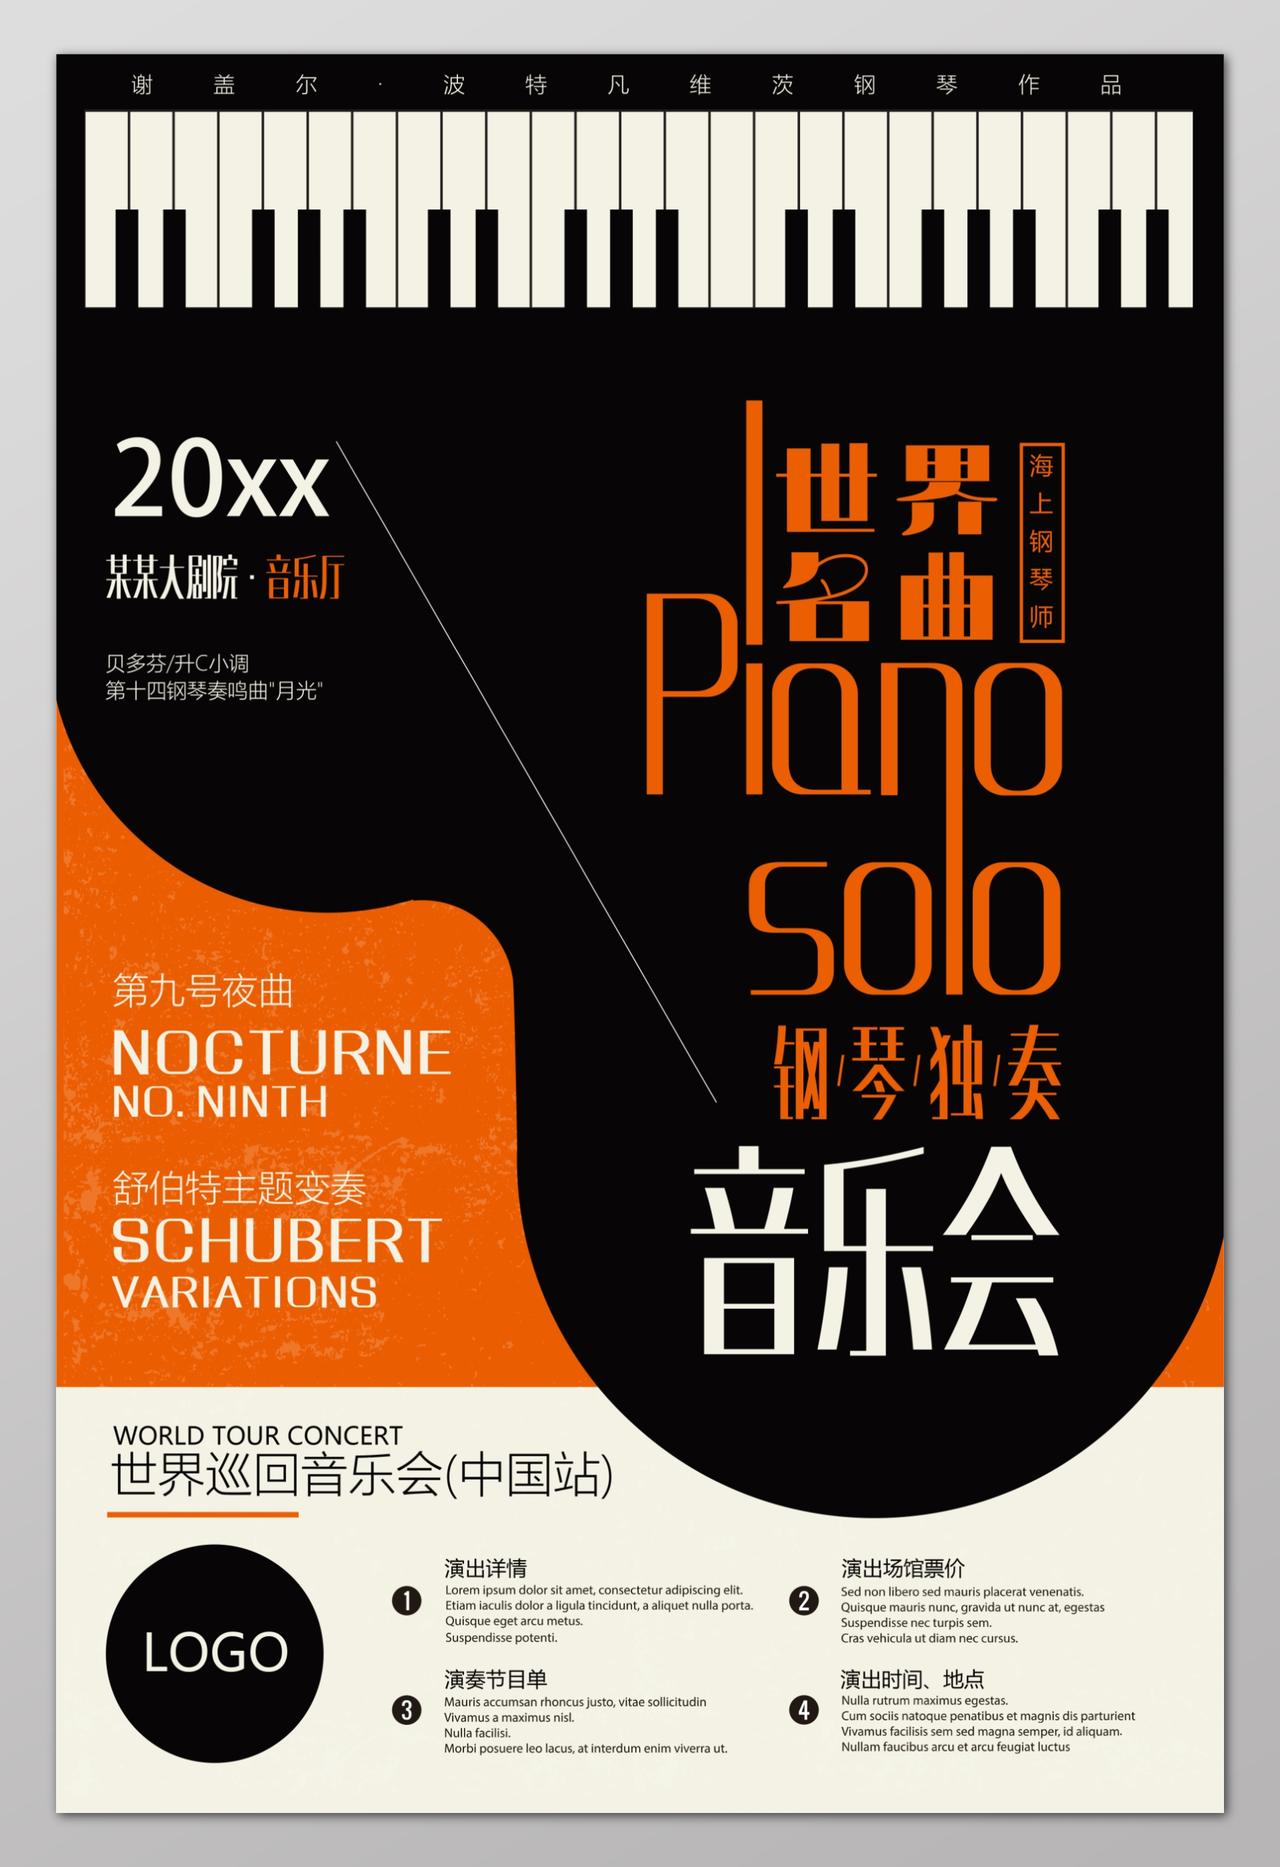 钢琴音乐节音乐会海报设计